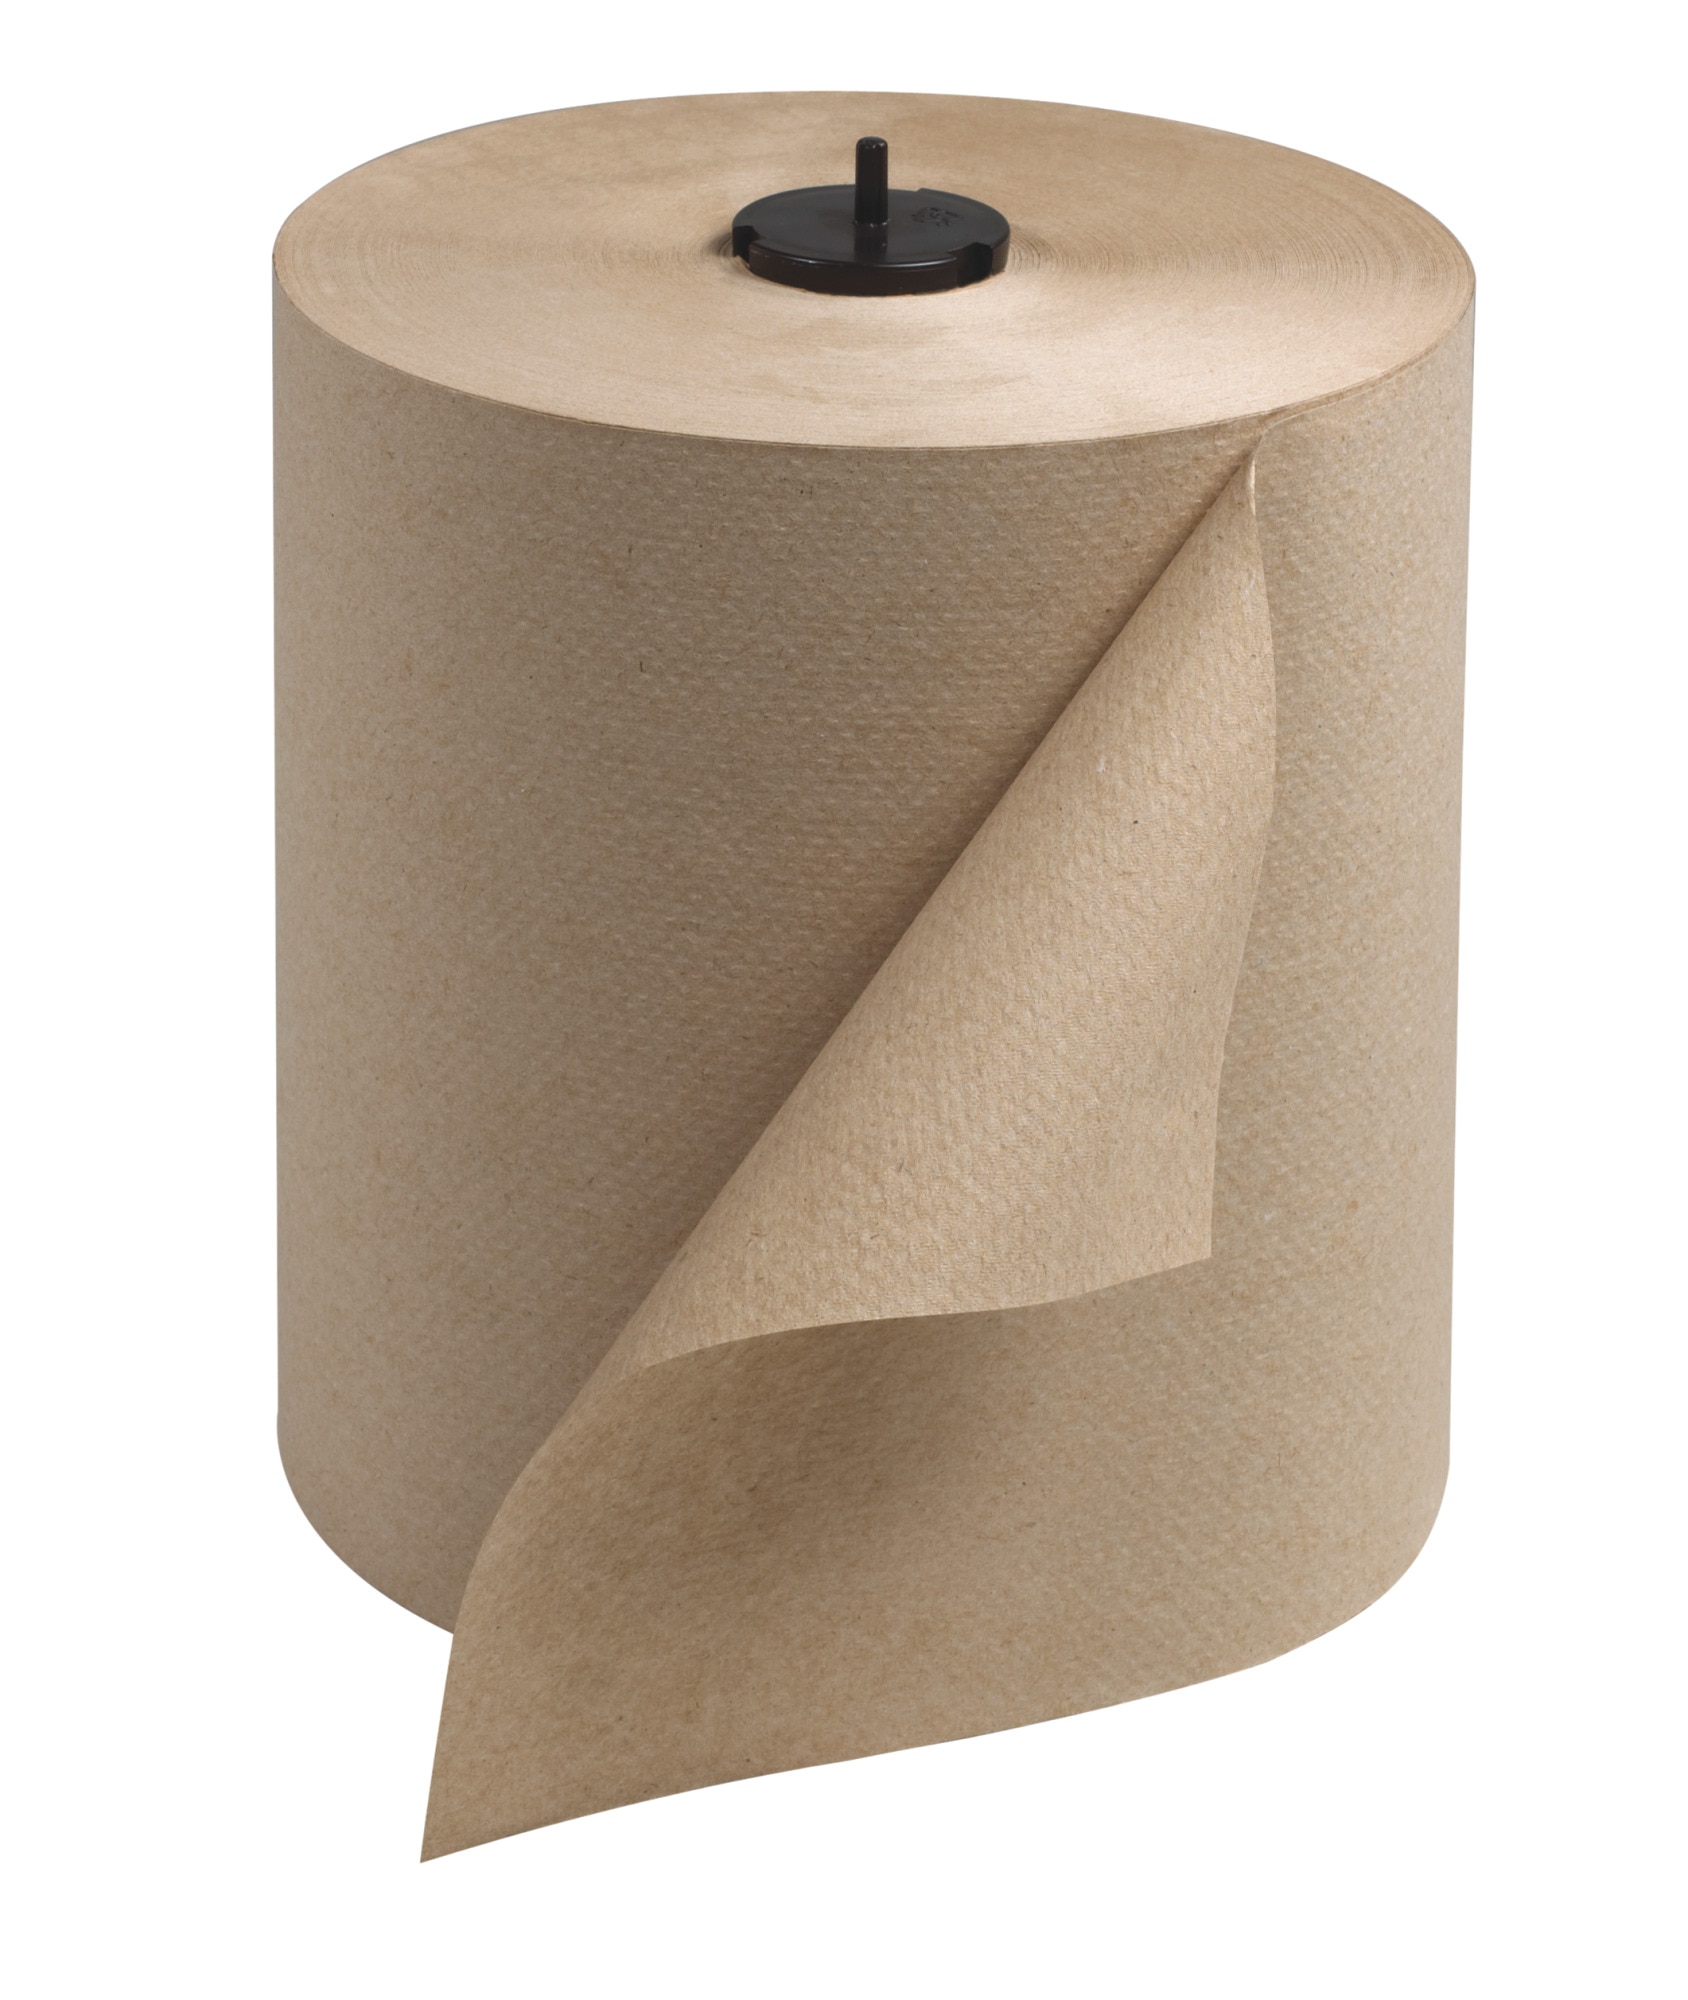 Roll 1 6. Рулонные салфетки торк. Торк матик hand Towel Roll диспенсер. Бумажные полотенца в рулонах. Бумажные полотенца плотные.